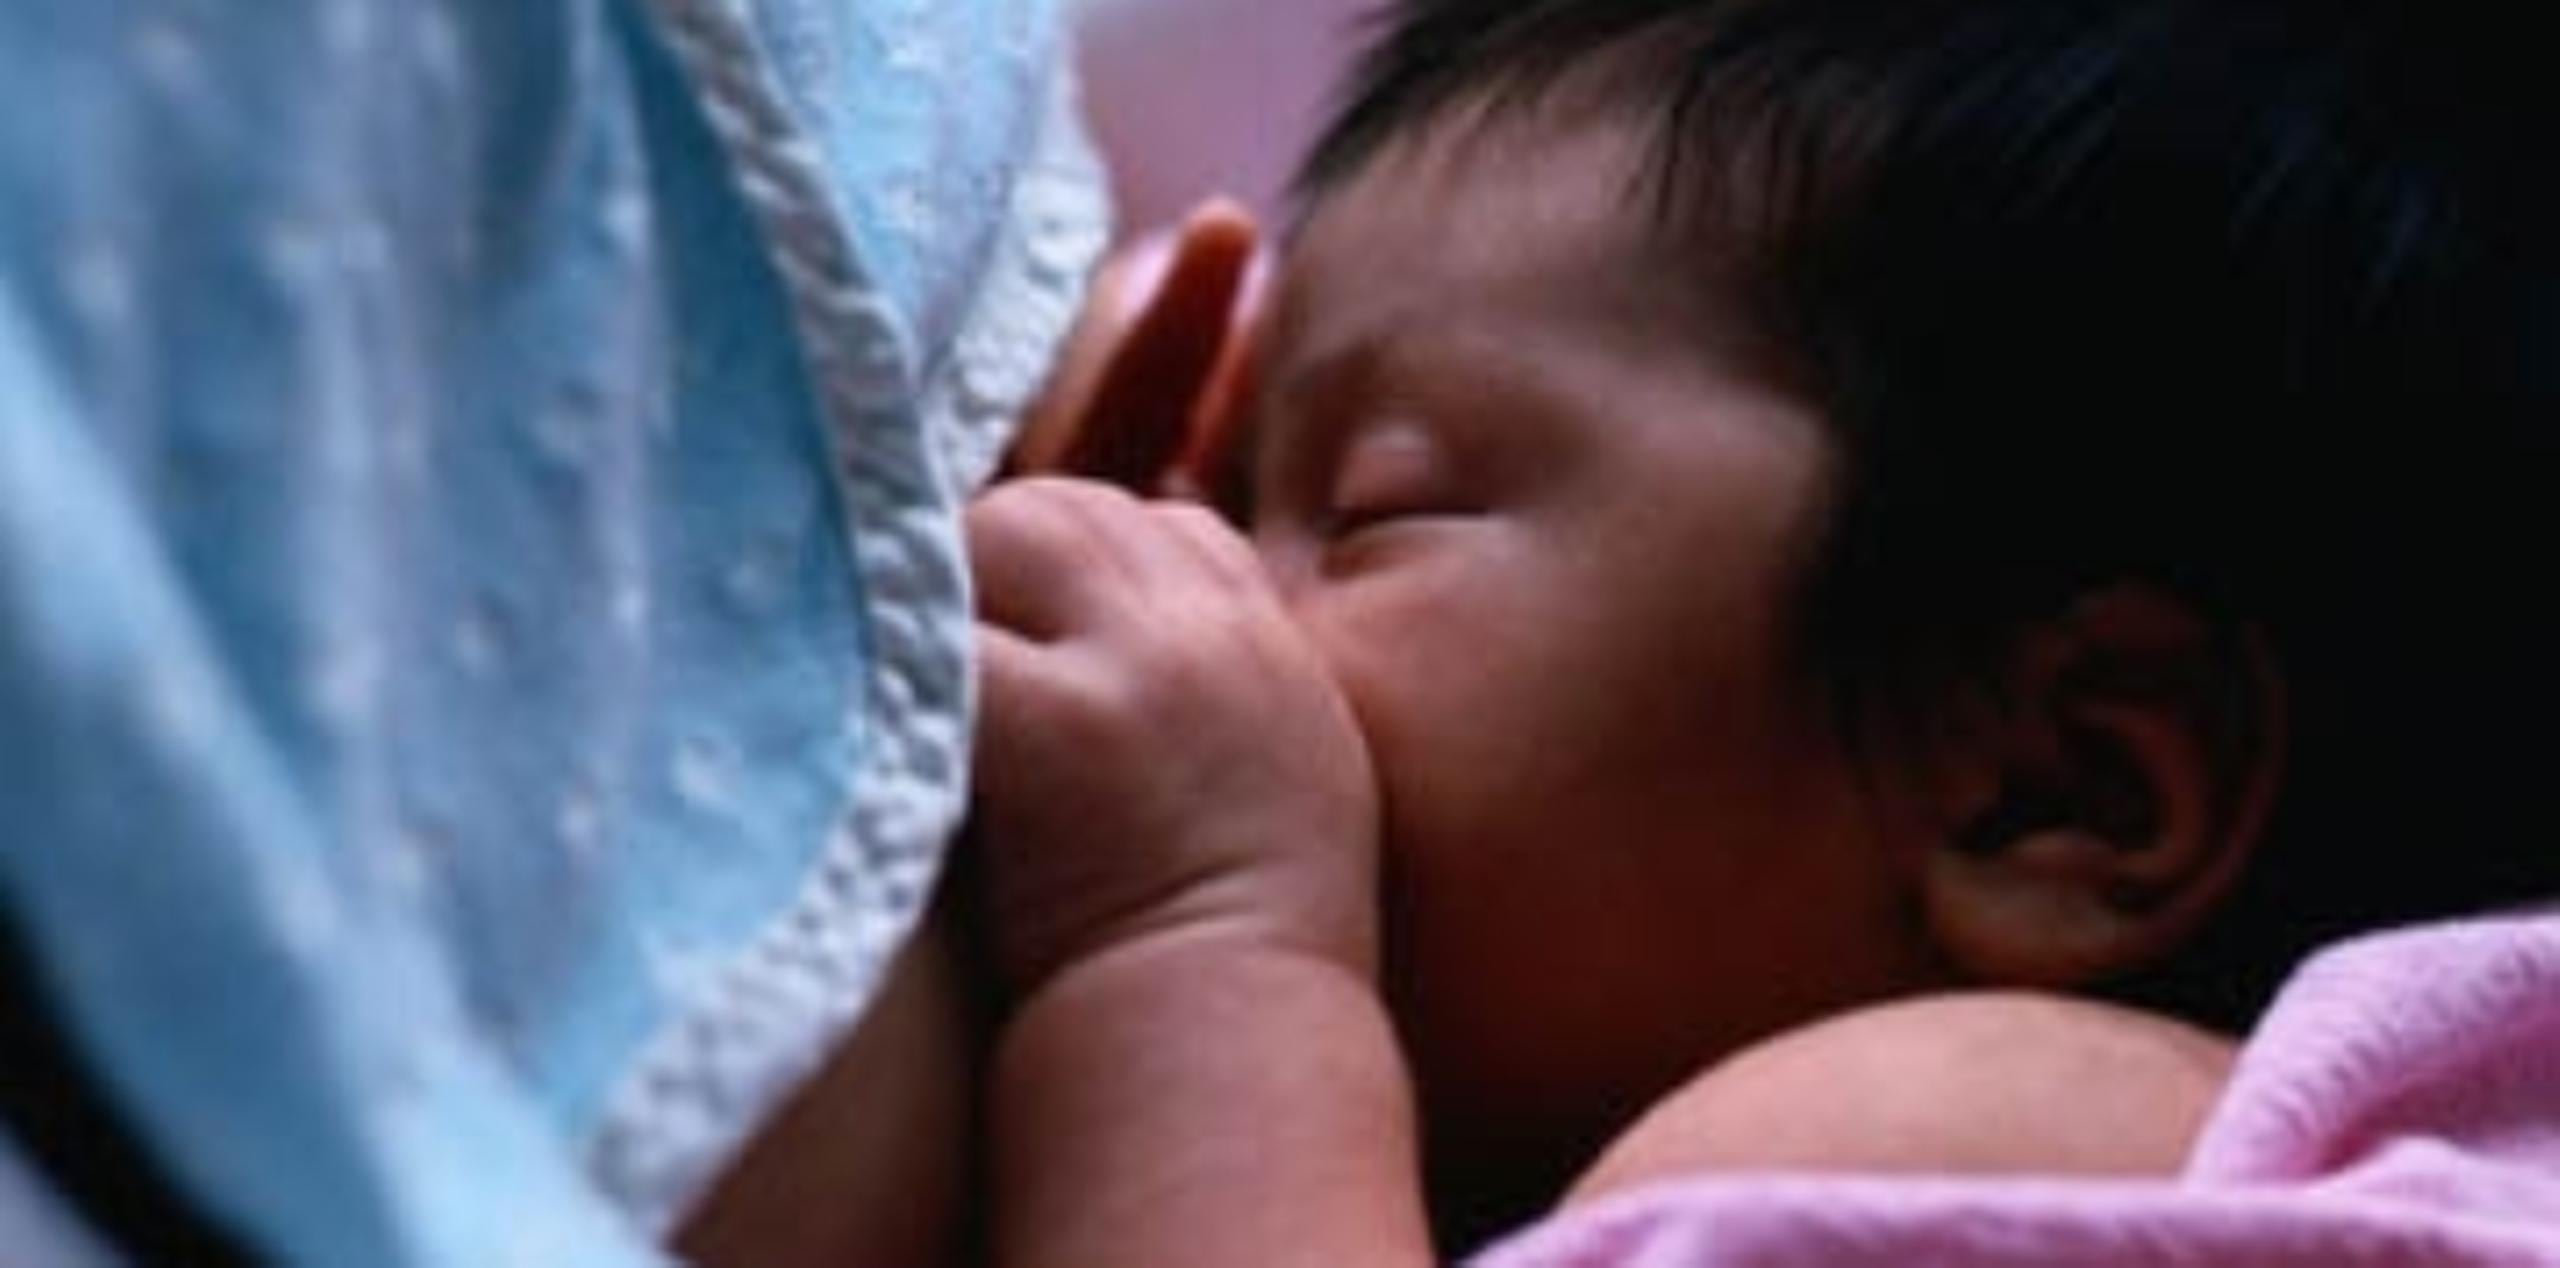 La campaña de Salud, que se celebra en agosto por ser el Mes Mundial de la Lactancia Materna, busca crear conciencia sobre este proceso  y el derecho que tiene toda madre a alimentar a su bebé en cualquier lugar. (Archivo)